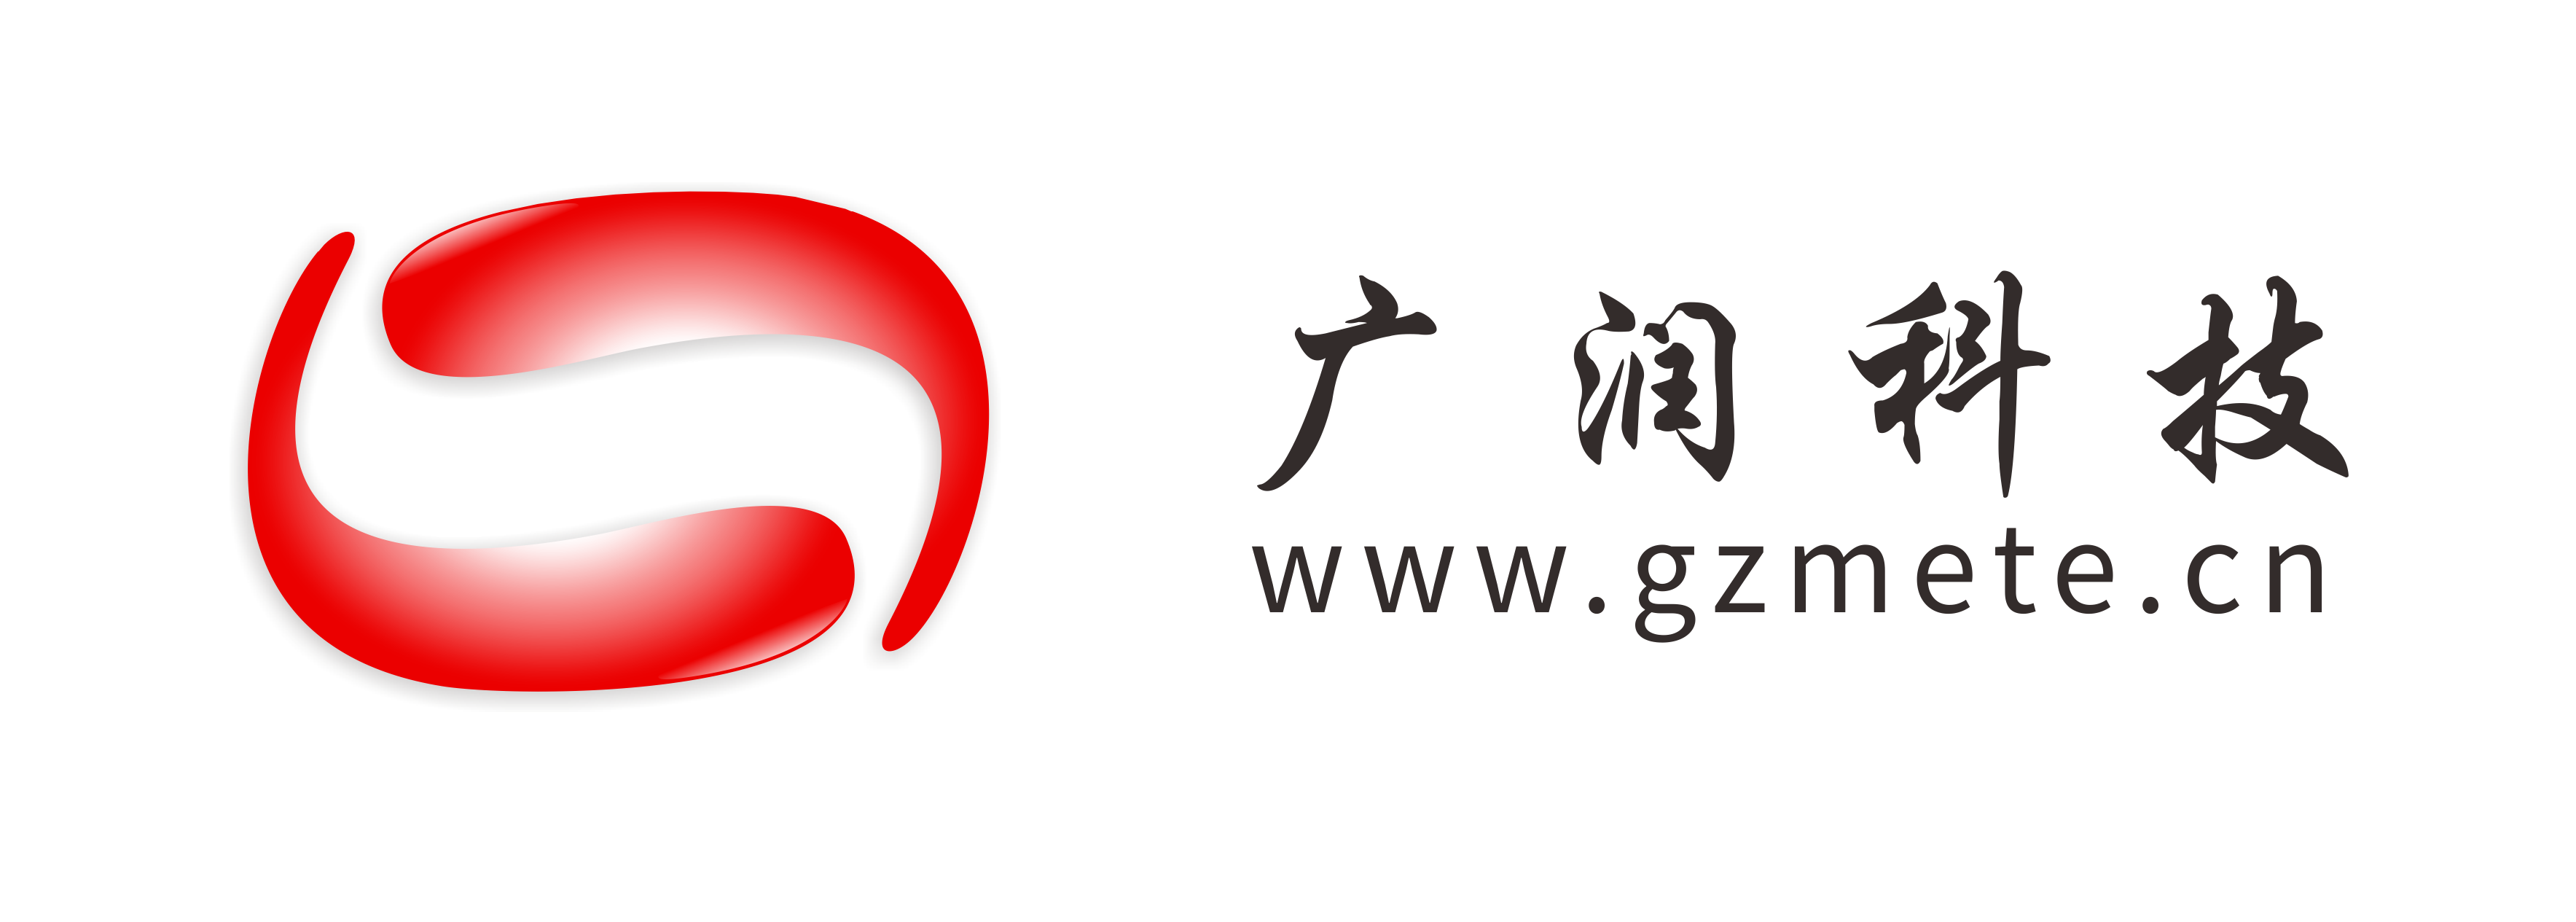 廣州市廣潤機電科技有限公司網站全新改版于2021年1月1日正式上線